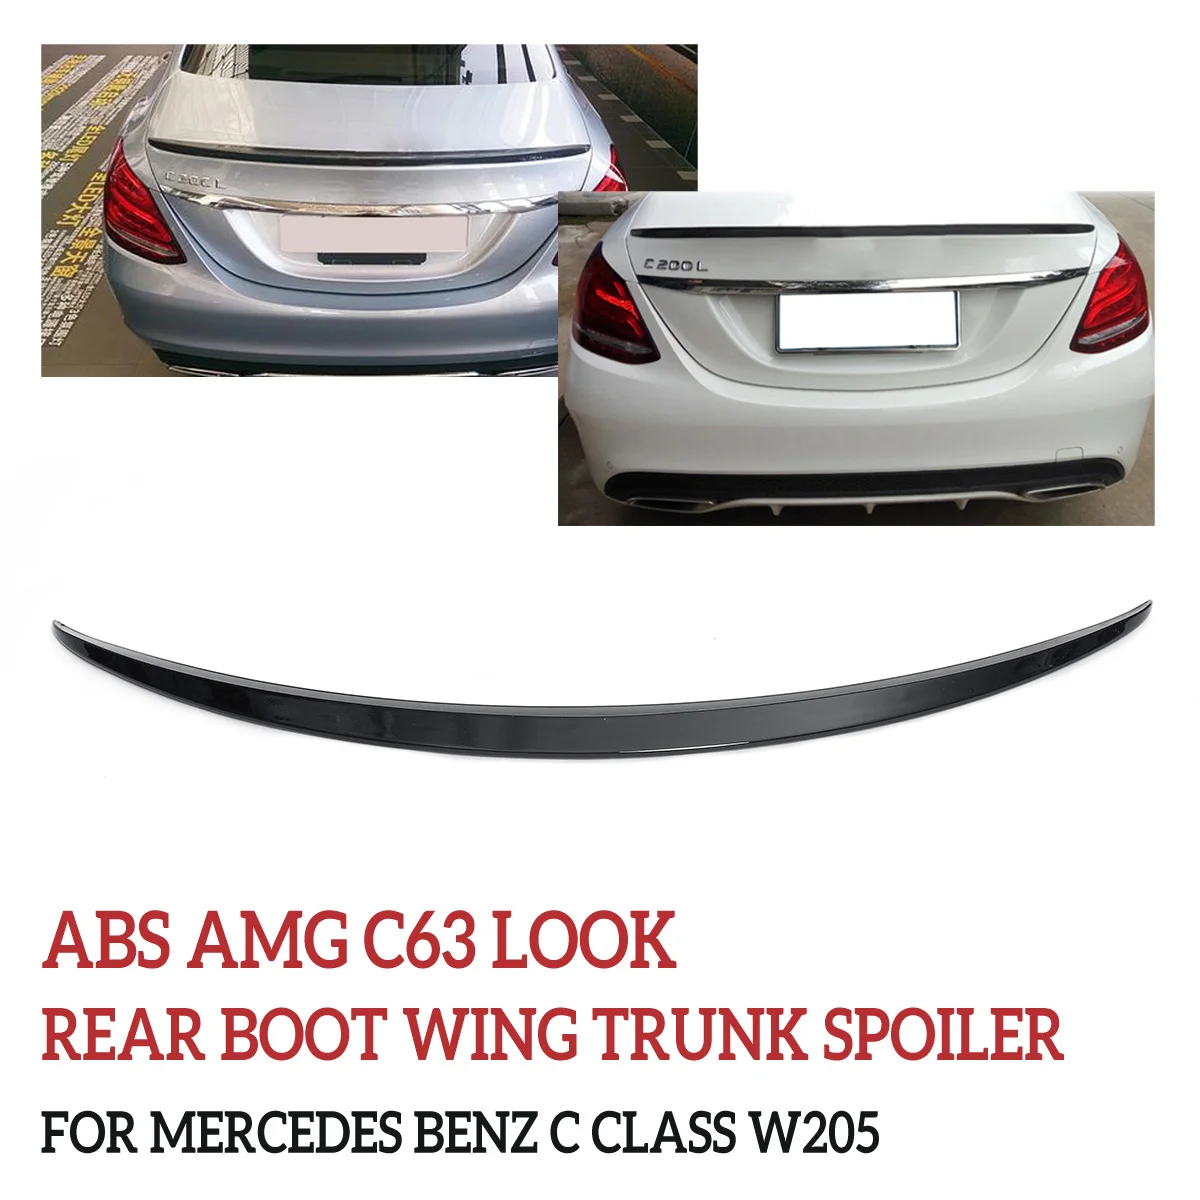 ABS для AMG C63 задний спойлер, который крепится на Багажник крыло багажника спойлер для Mercedes Benz C CLASS W205 внешние части